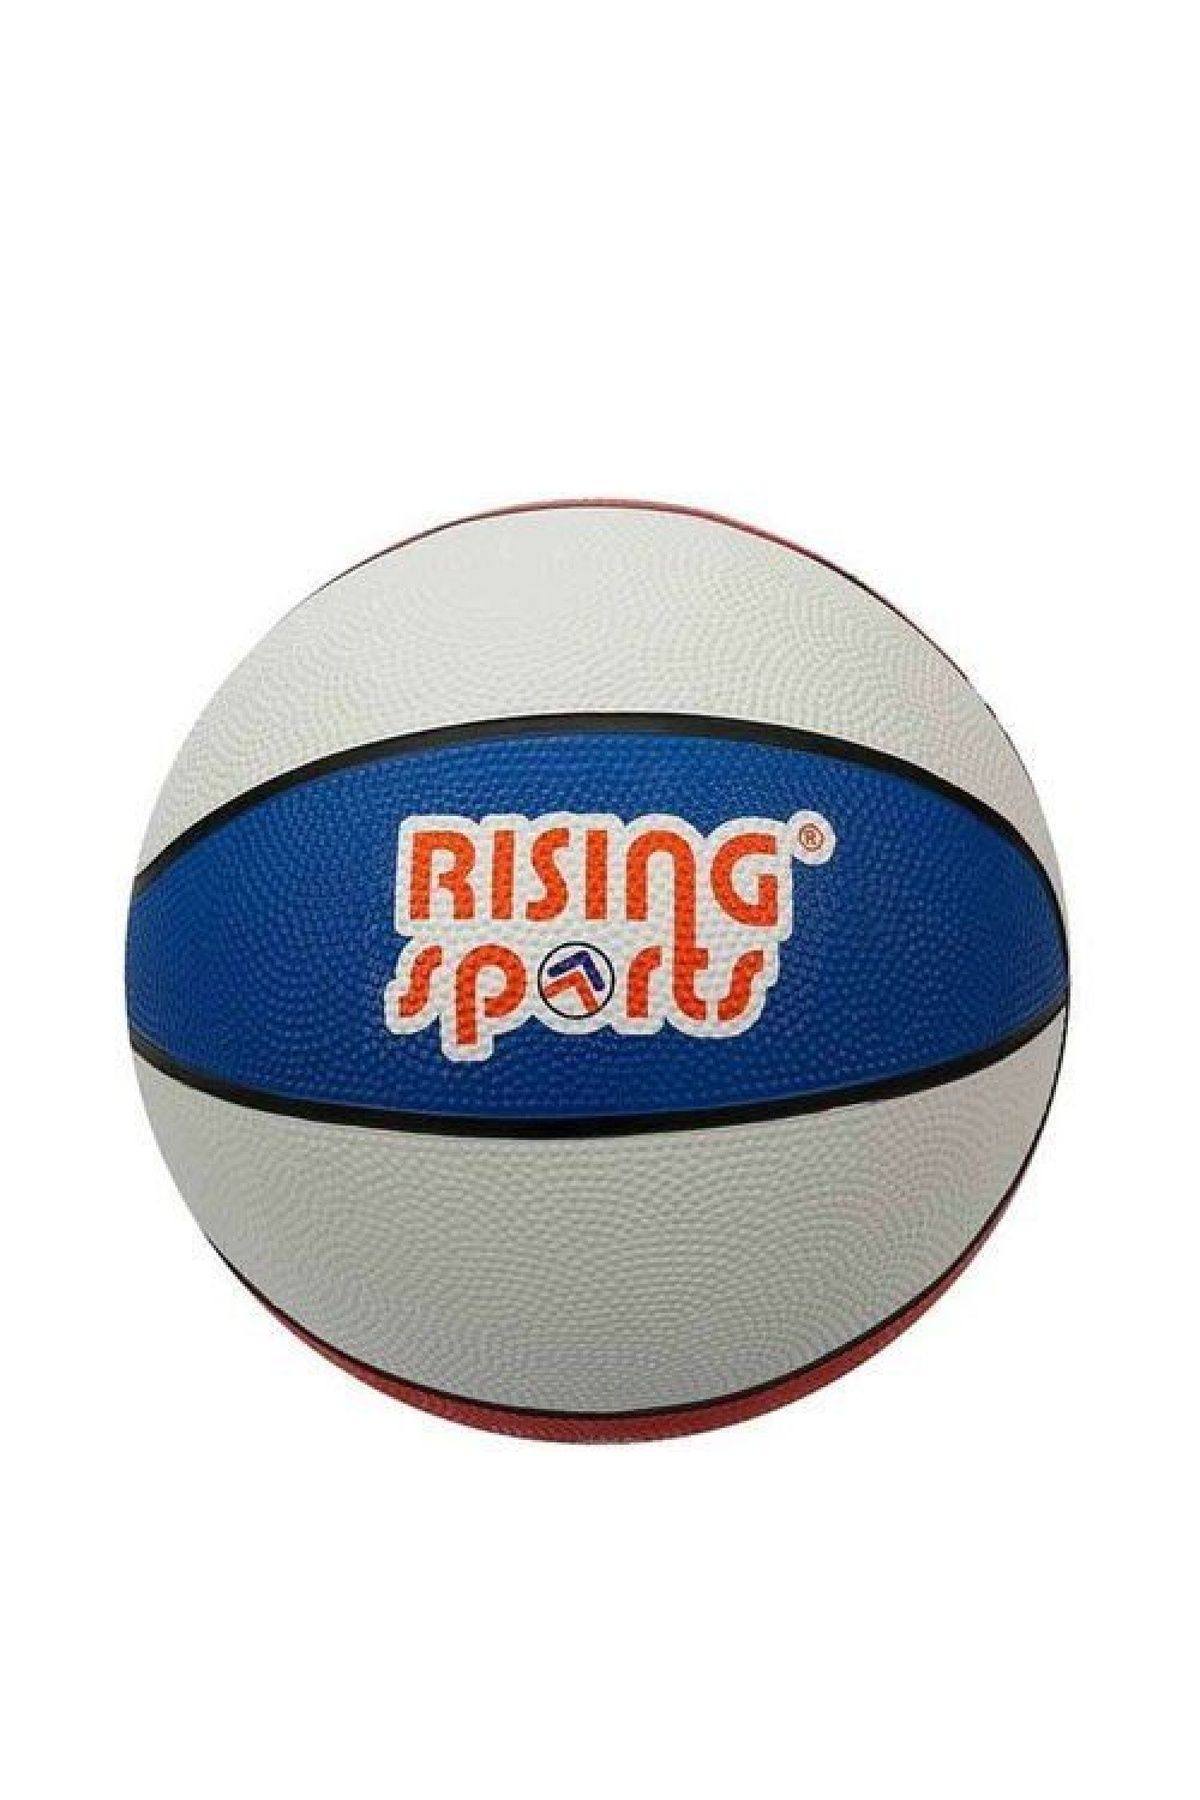 ENSAR GİYİM 0328 Sun-ers-rsp-basket Topu Sıze-5